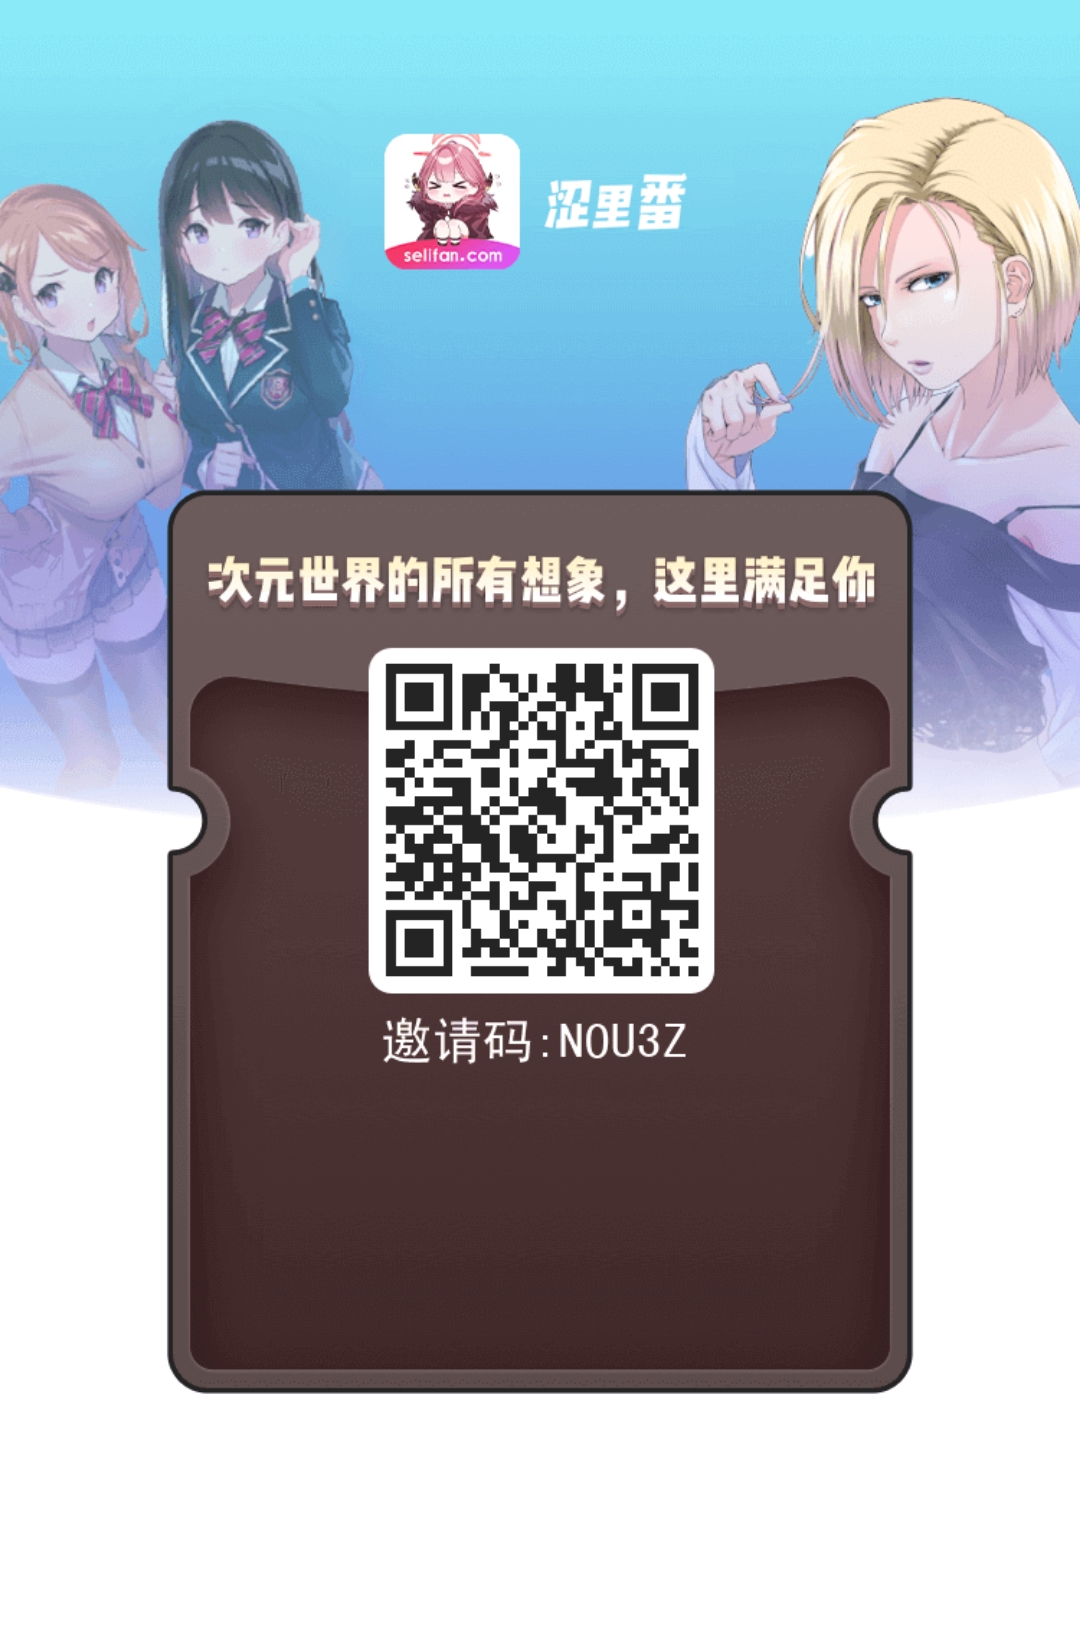 app_share.jpg